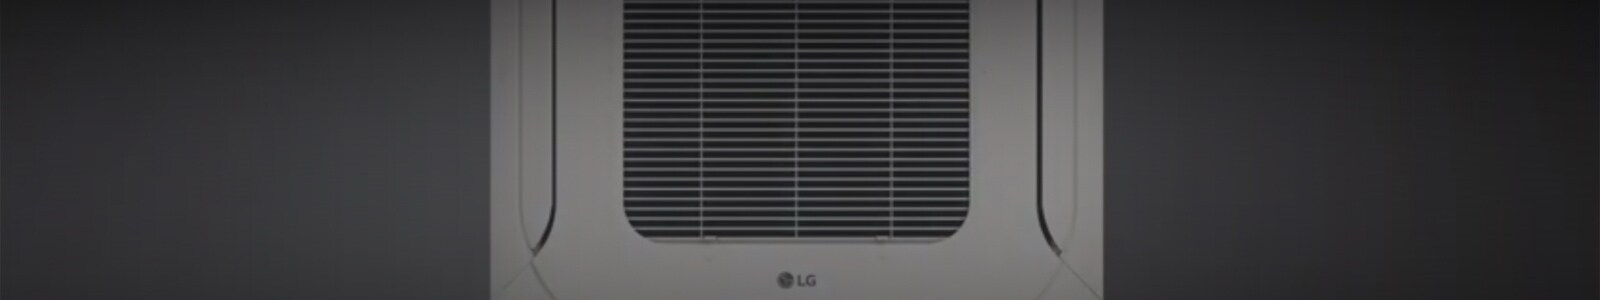 LG Smart Cassette Introduction1